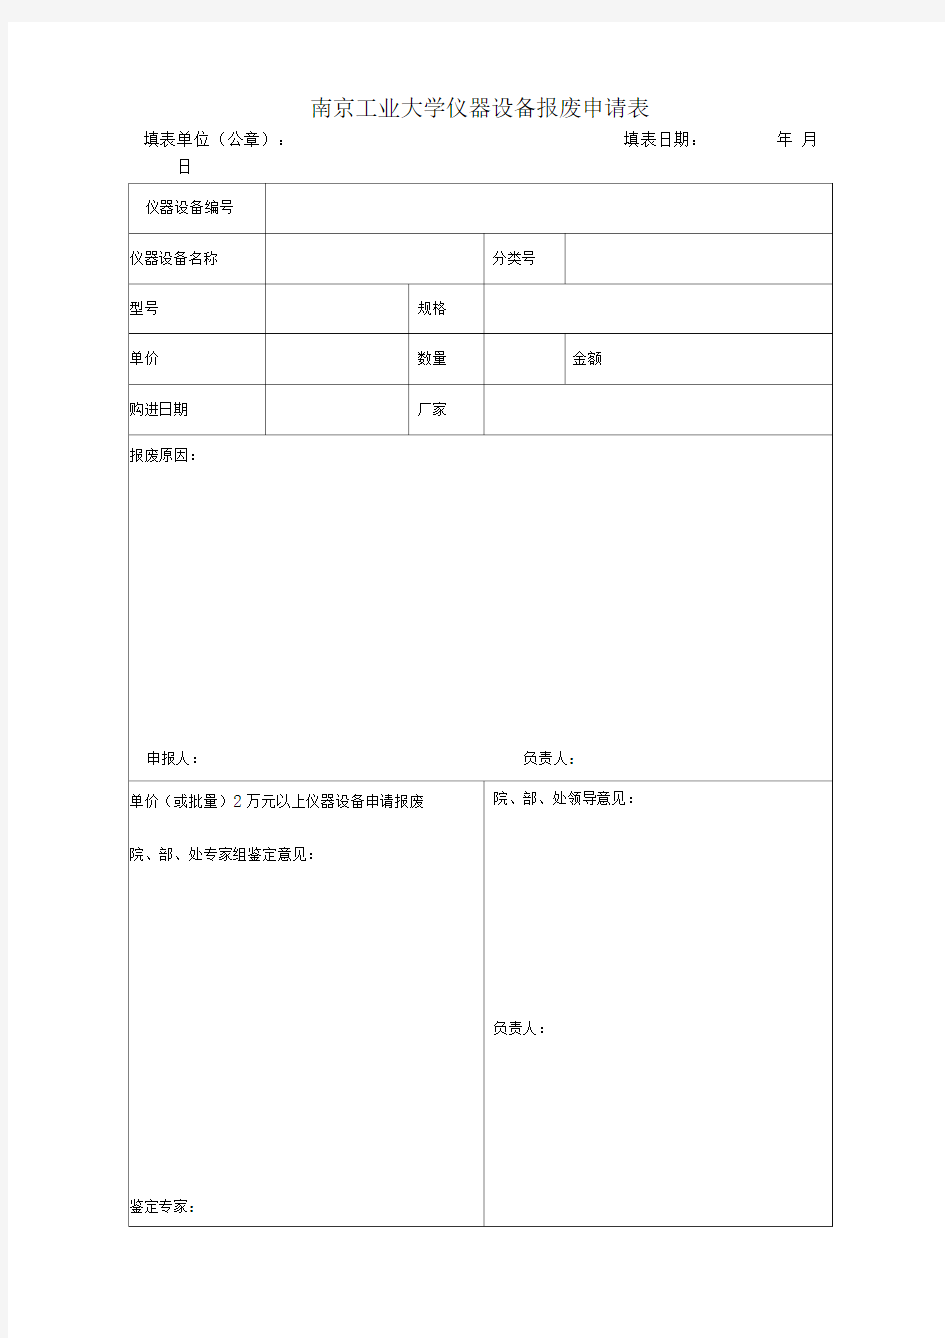 南京工业大学仪器设备报废申请表